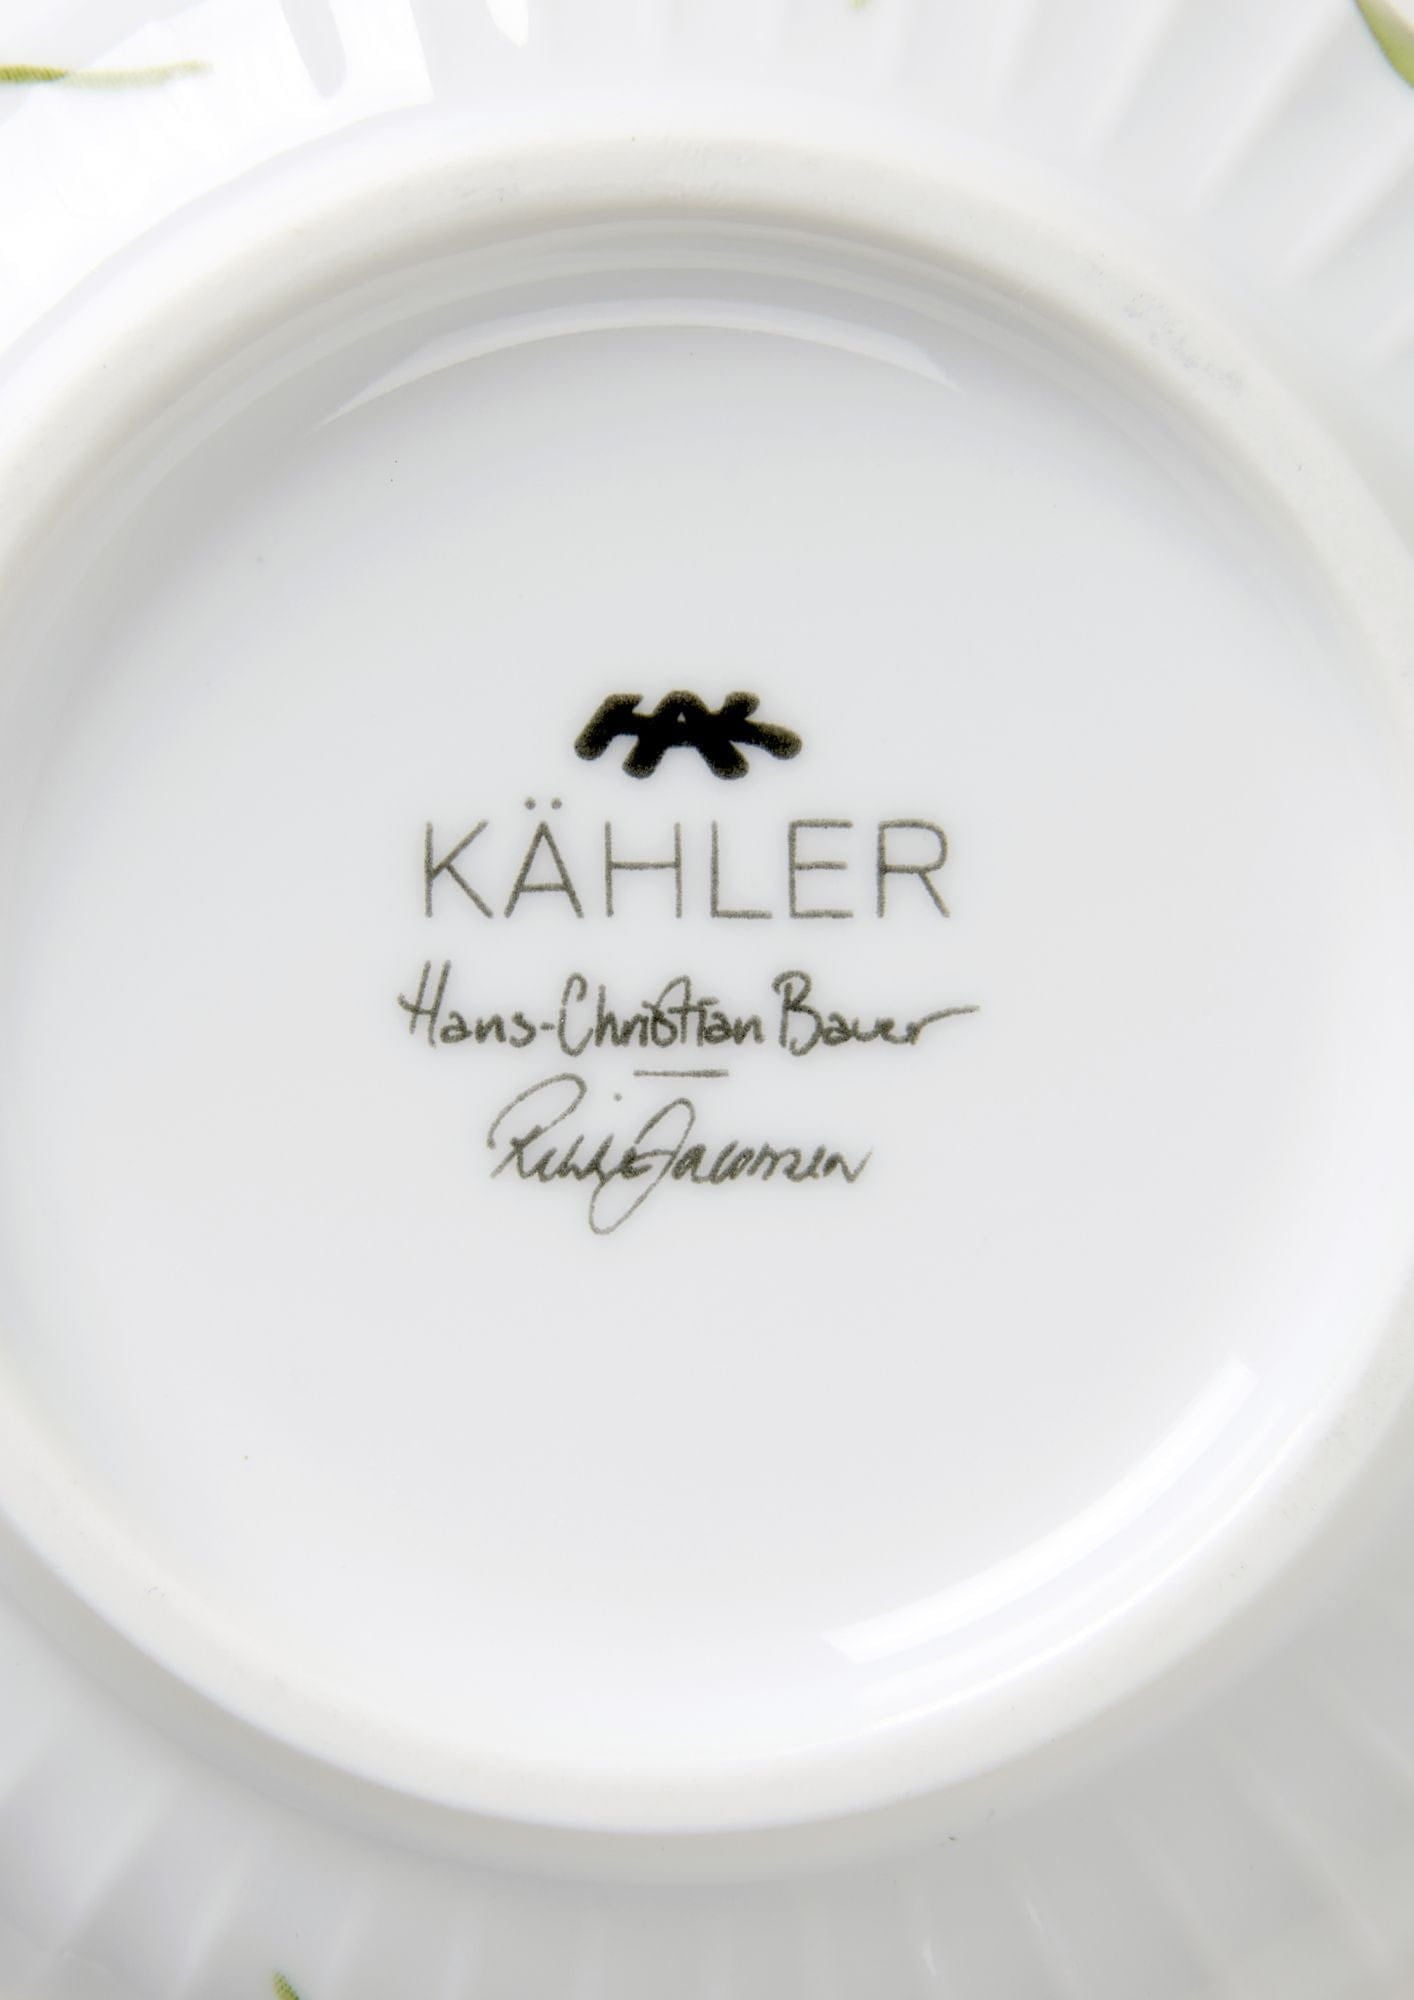 Kähler Hammershøi sommerskål Ø12 cm, glem mig ikke